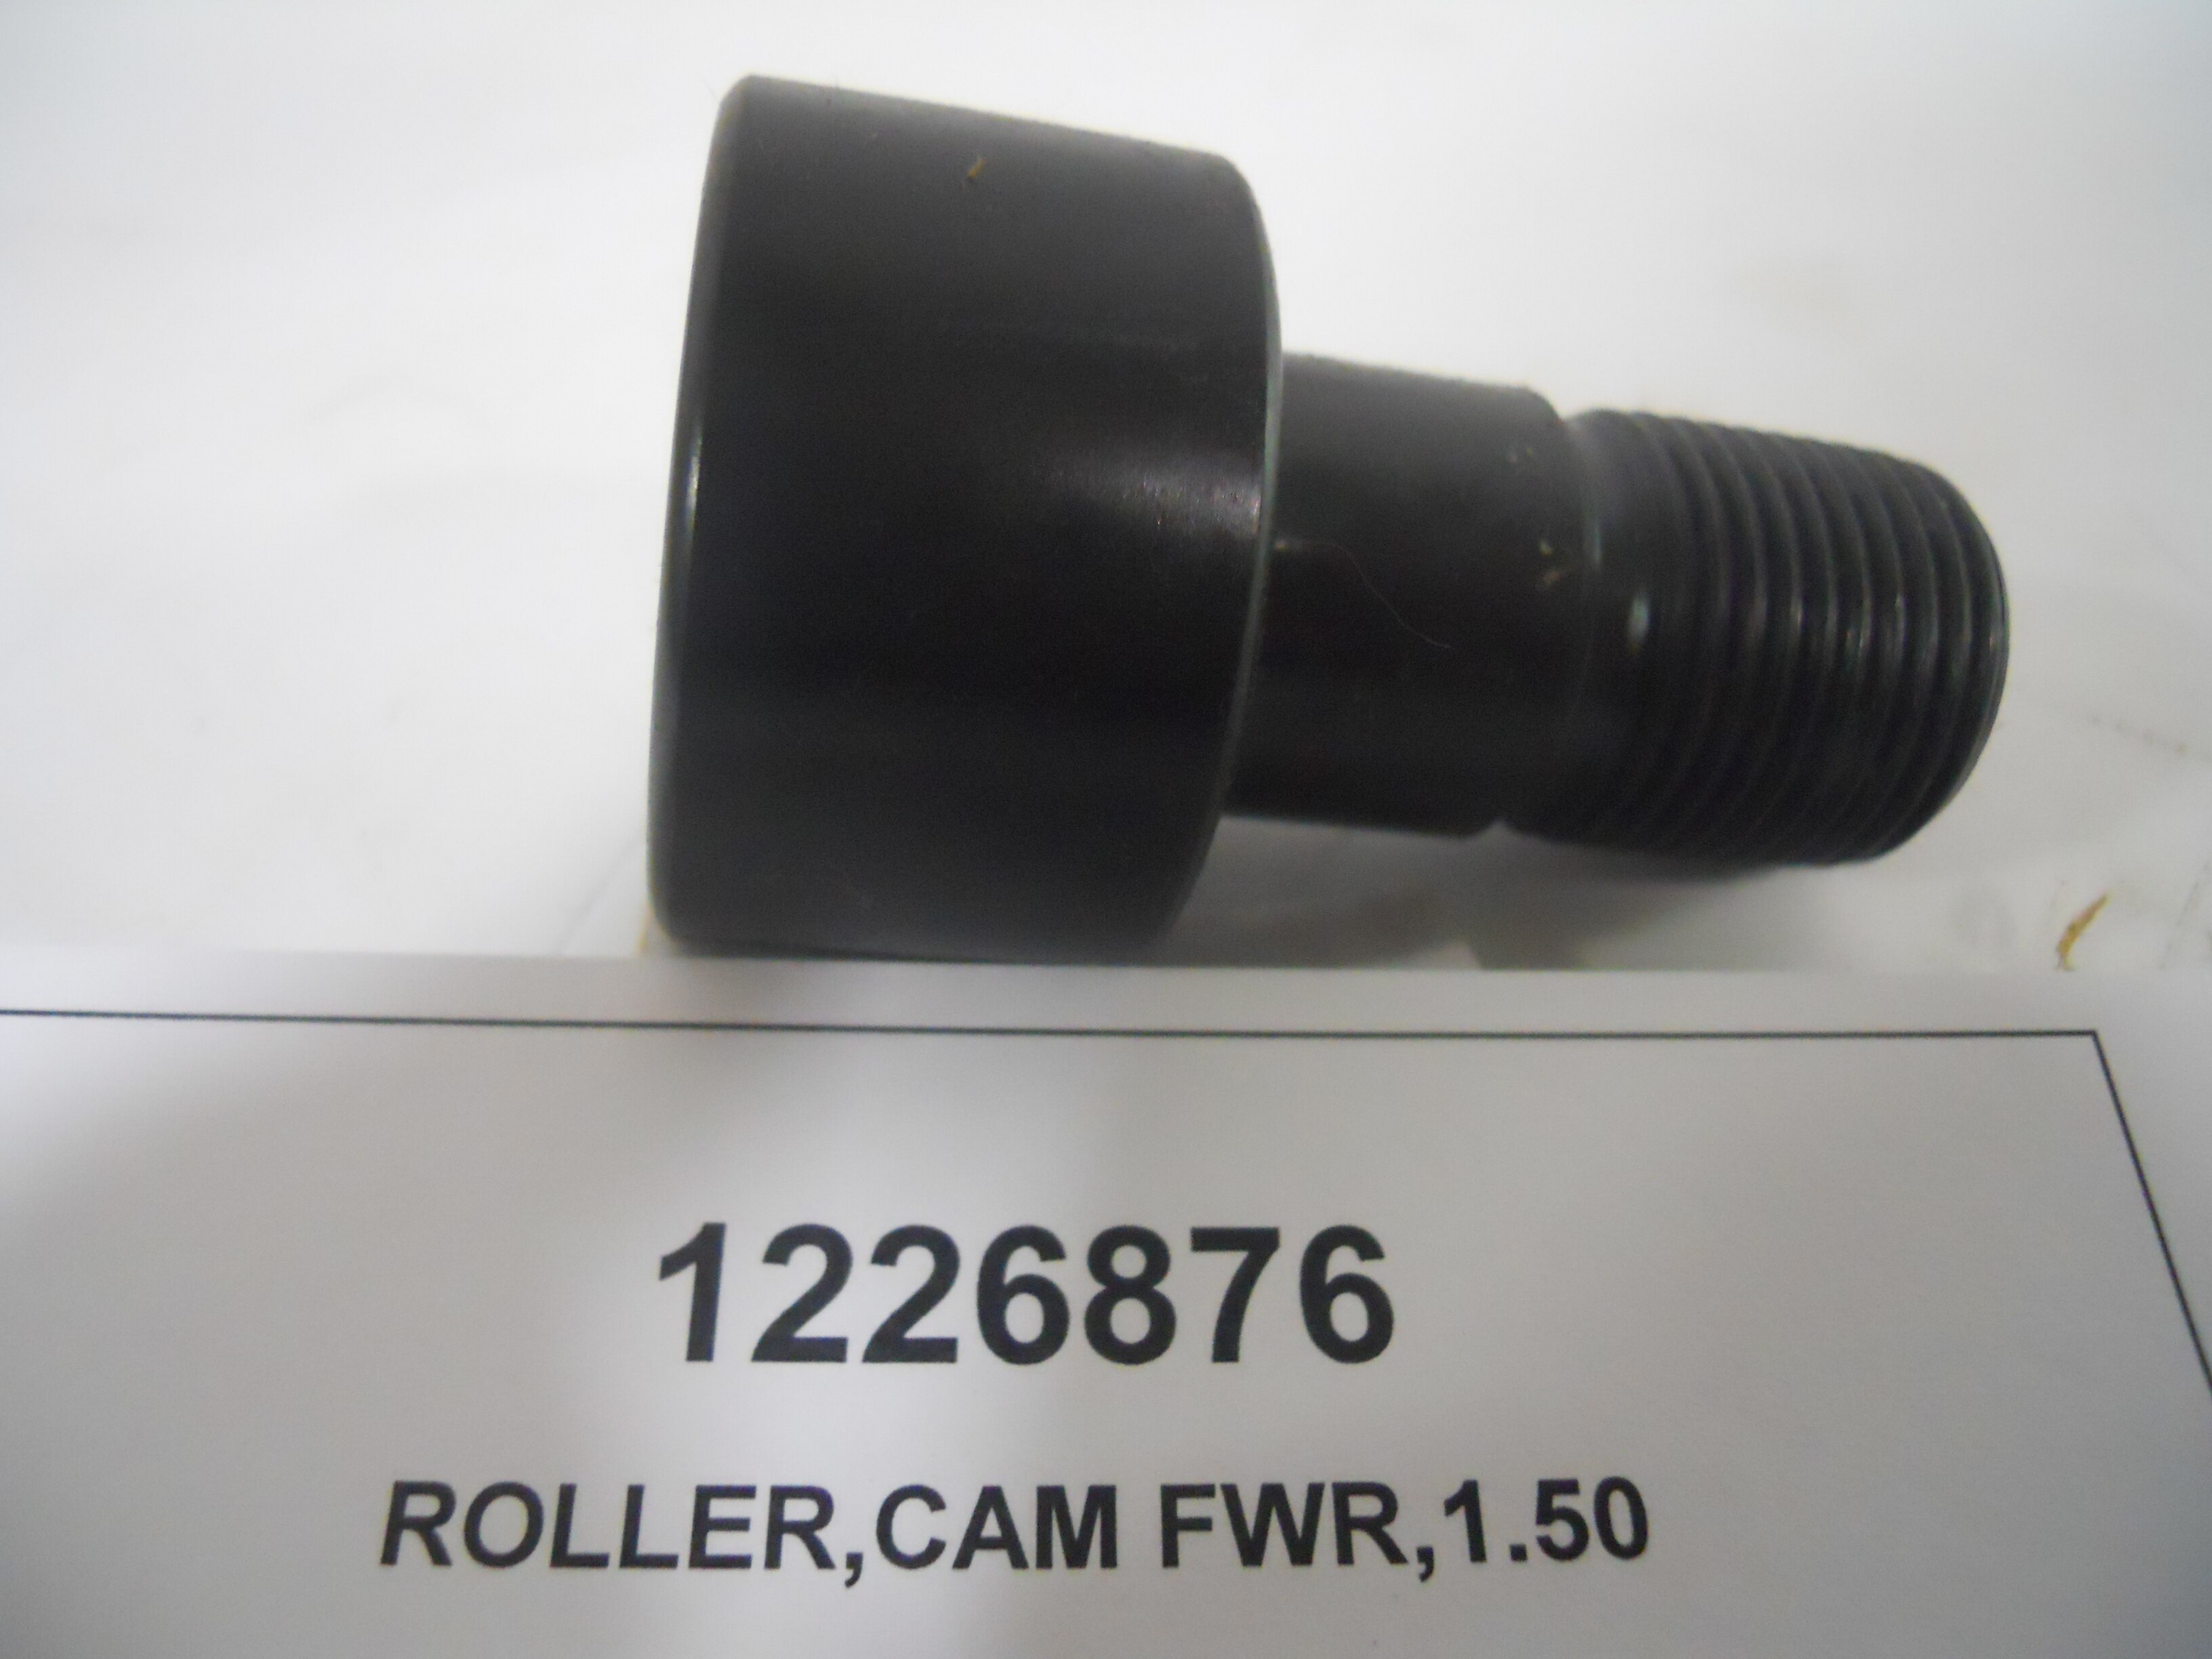 ROLLER,CAM FWR,1.50